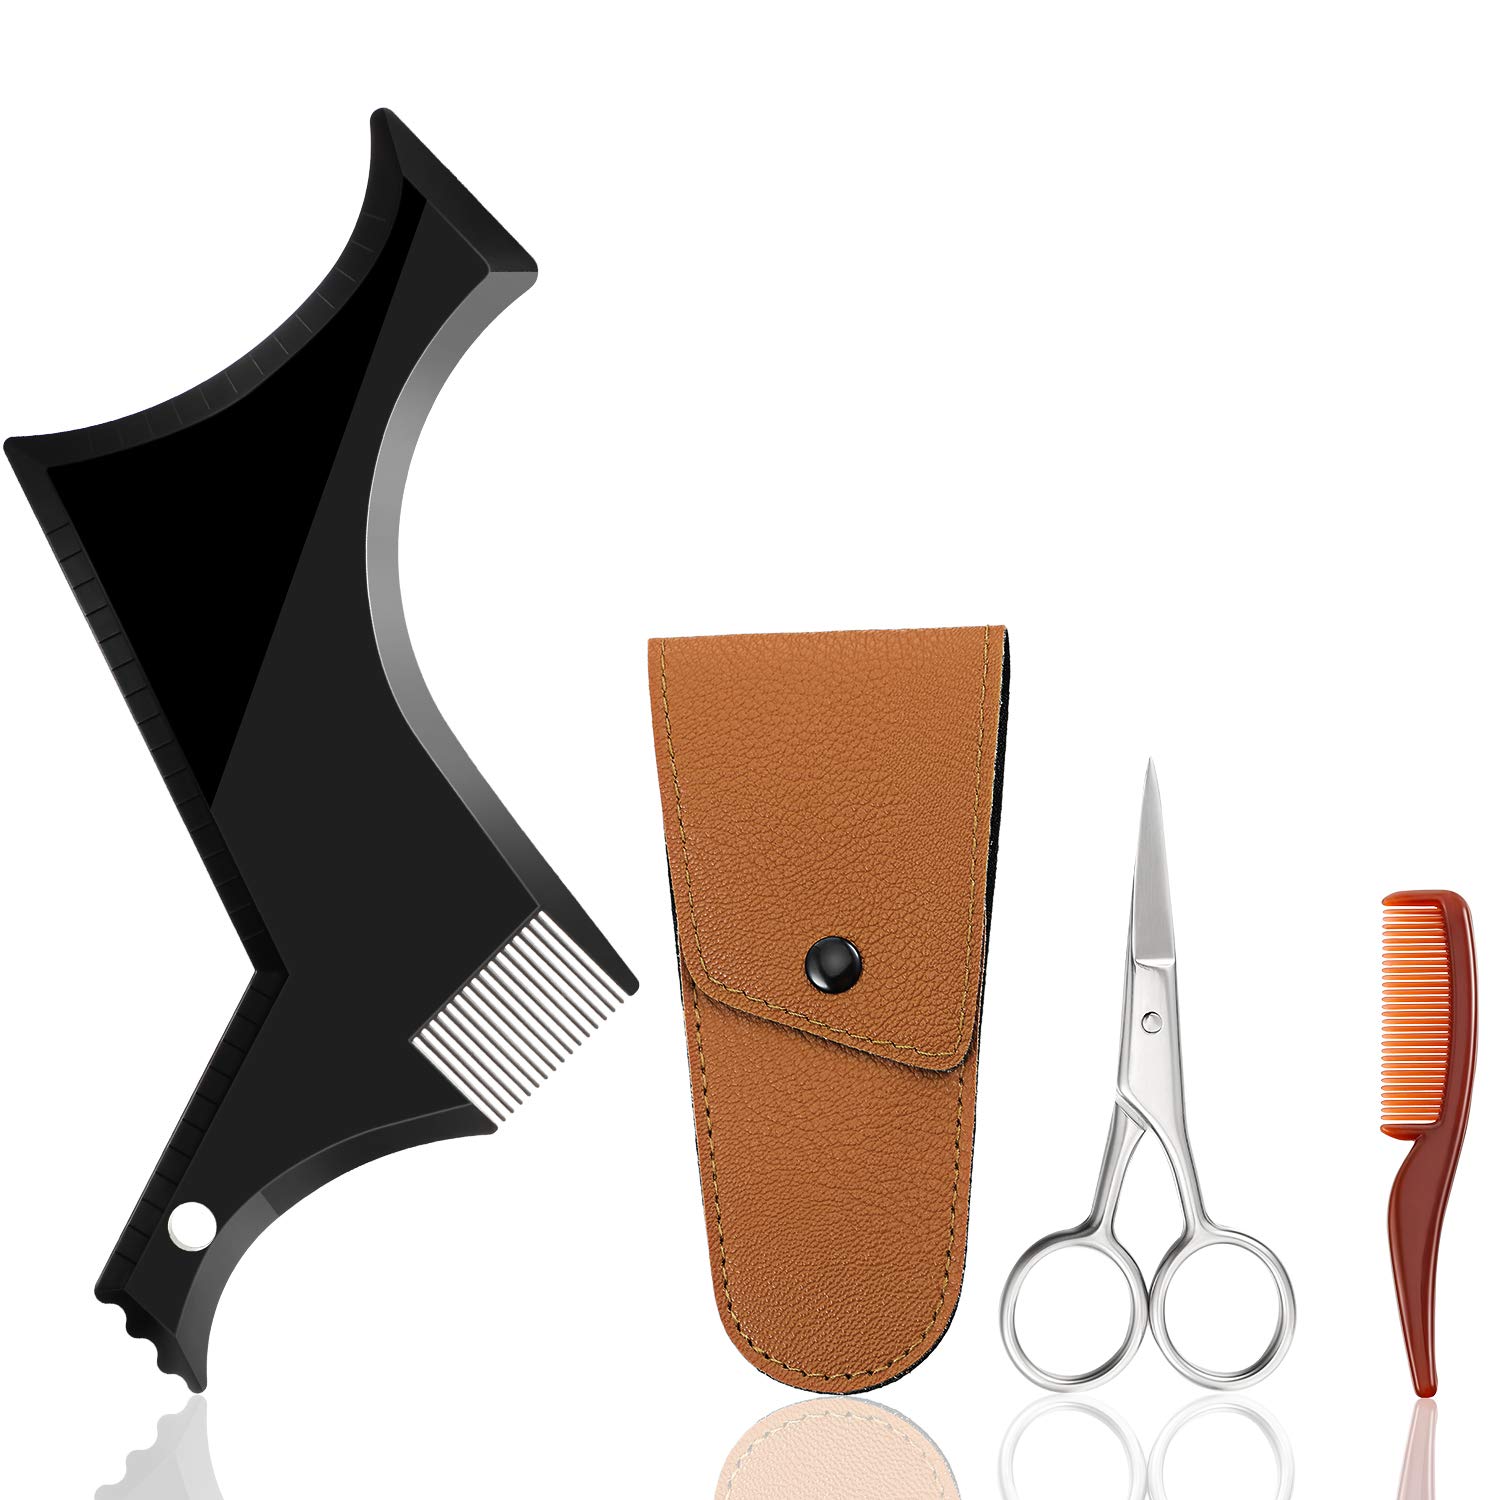 2. Beard shaping Tool kit